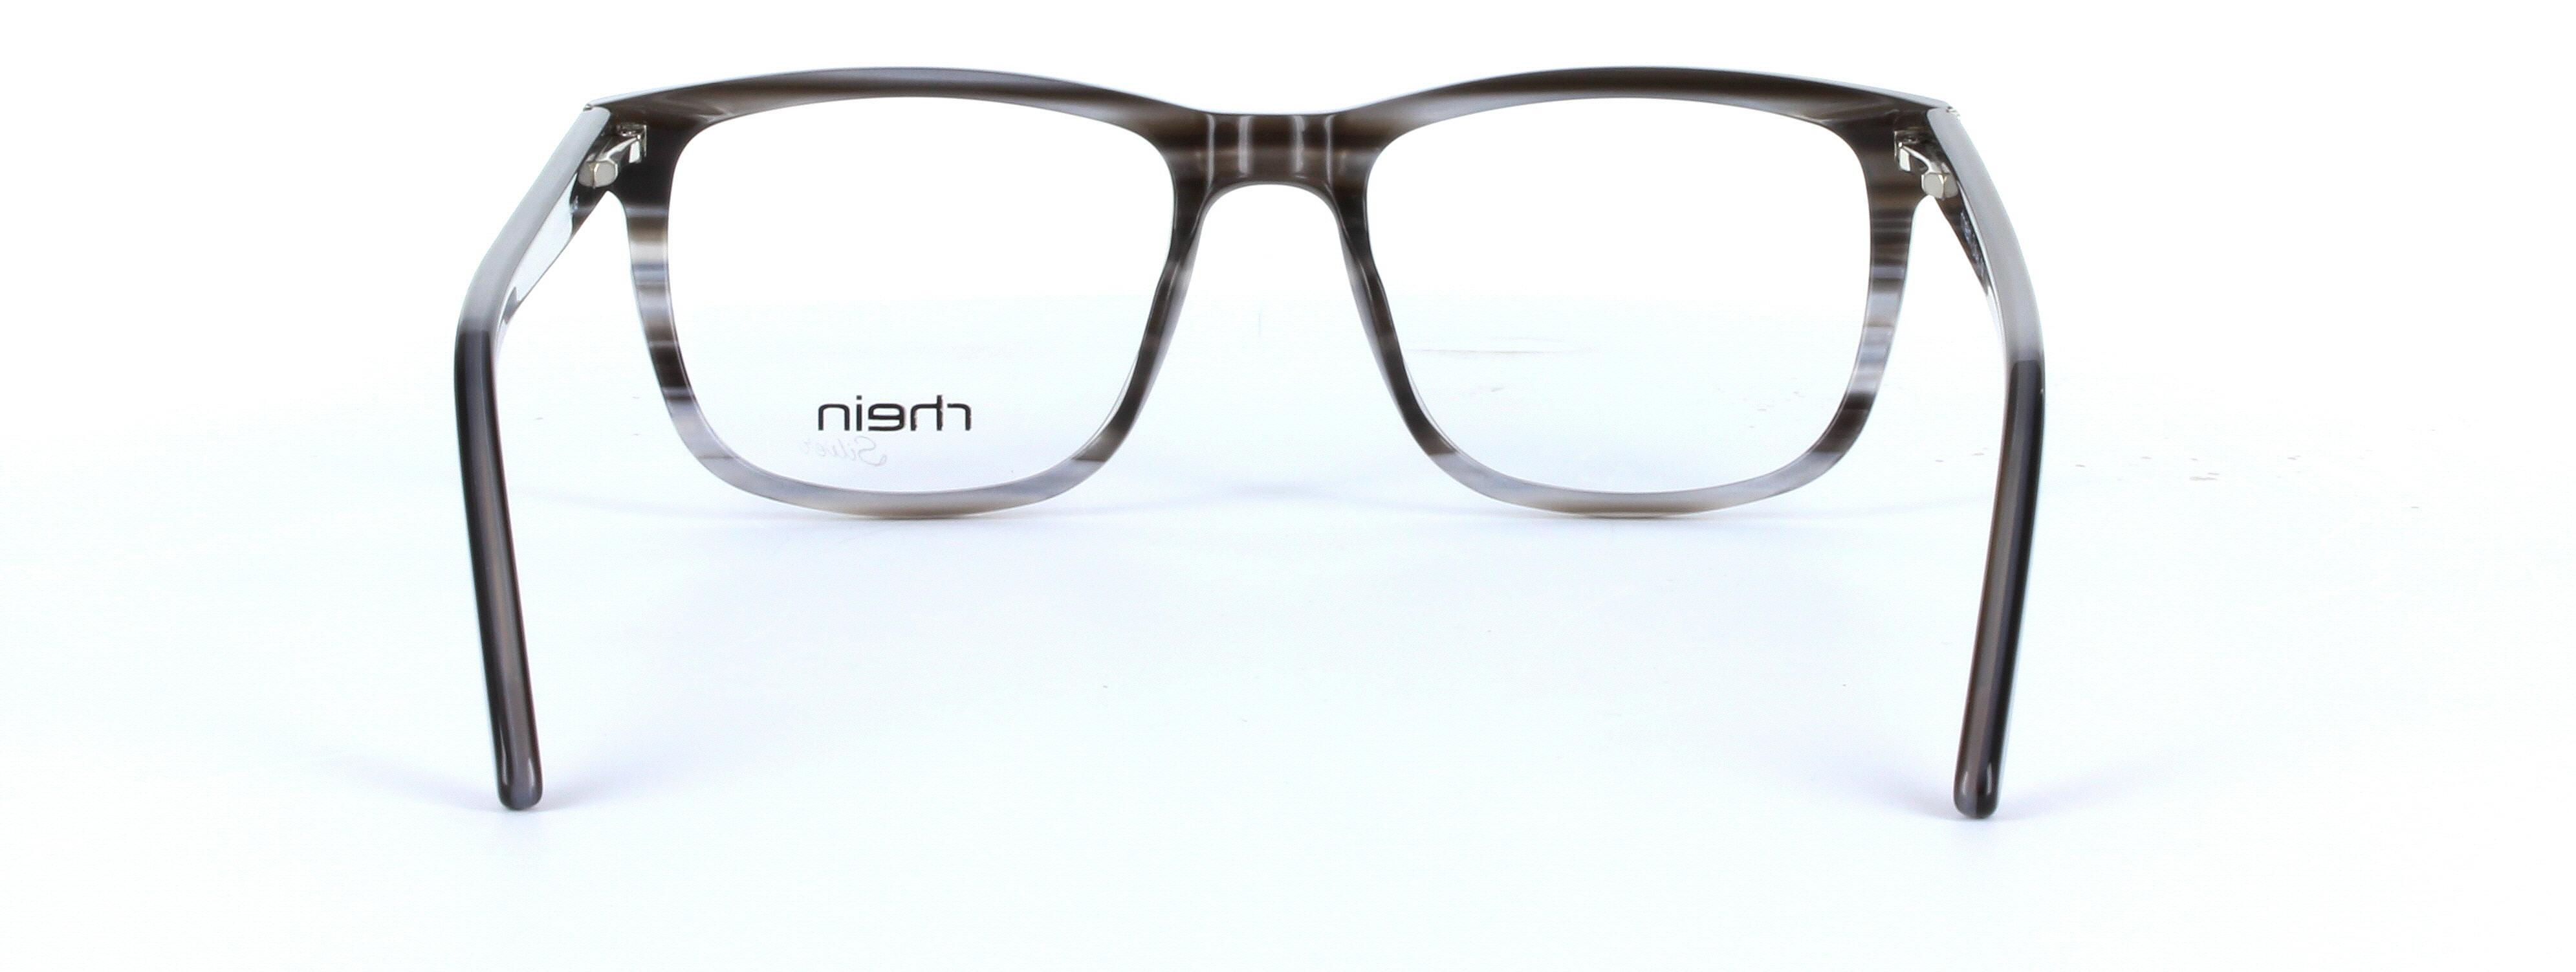 Morgan Grey Full Rim Square Plastic Glasses - Image View 3